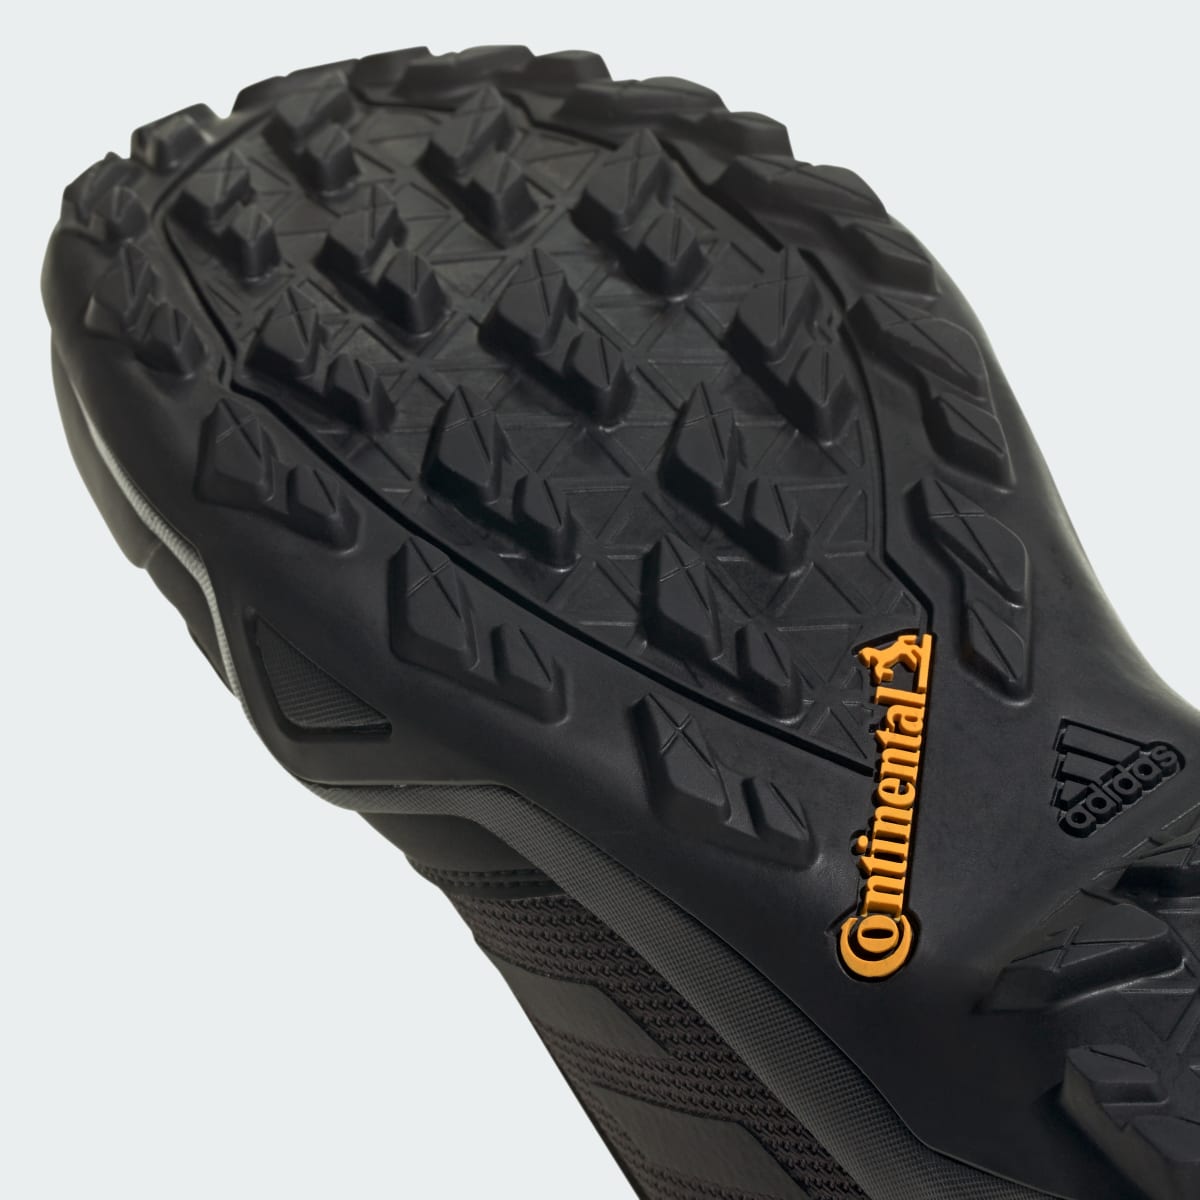 Adidas Terrex AX3 GORE-TEX Hiking Shoes. 5